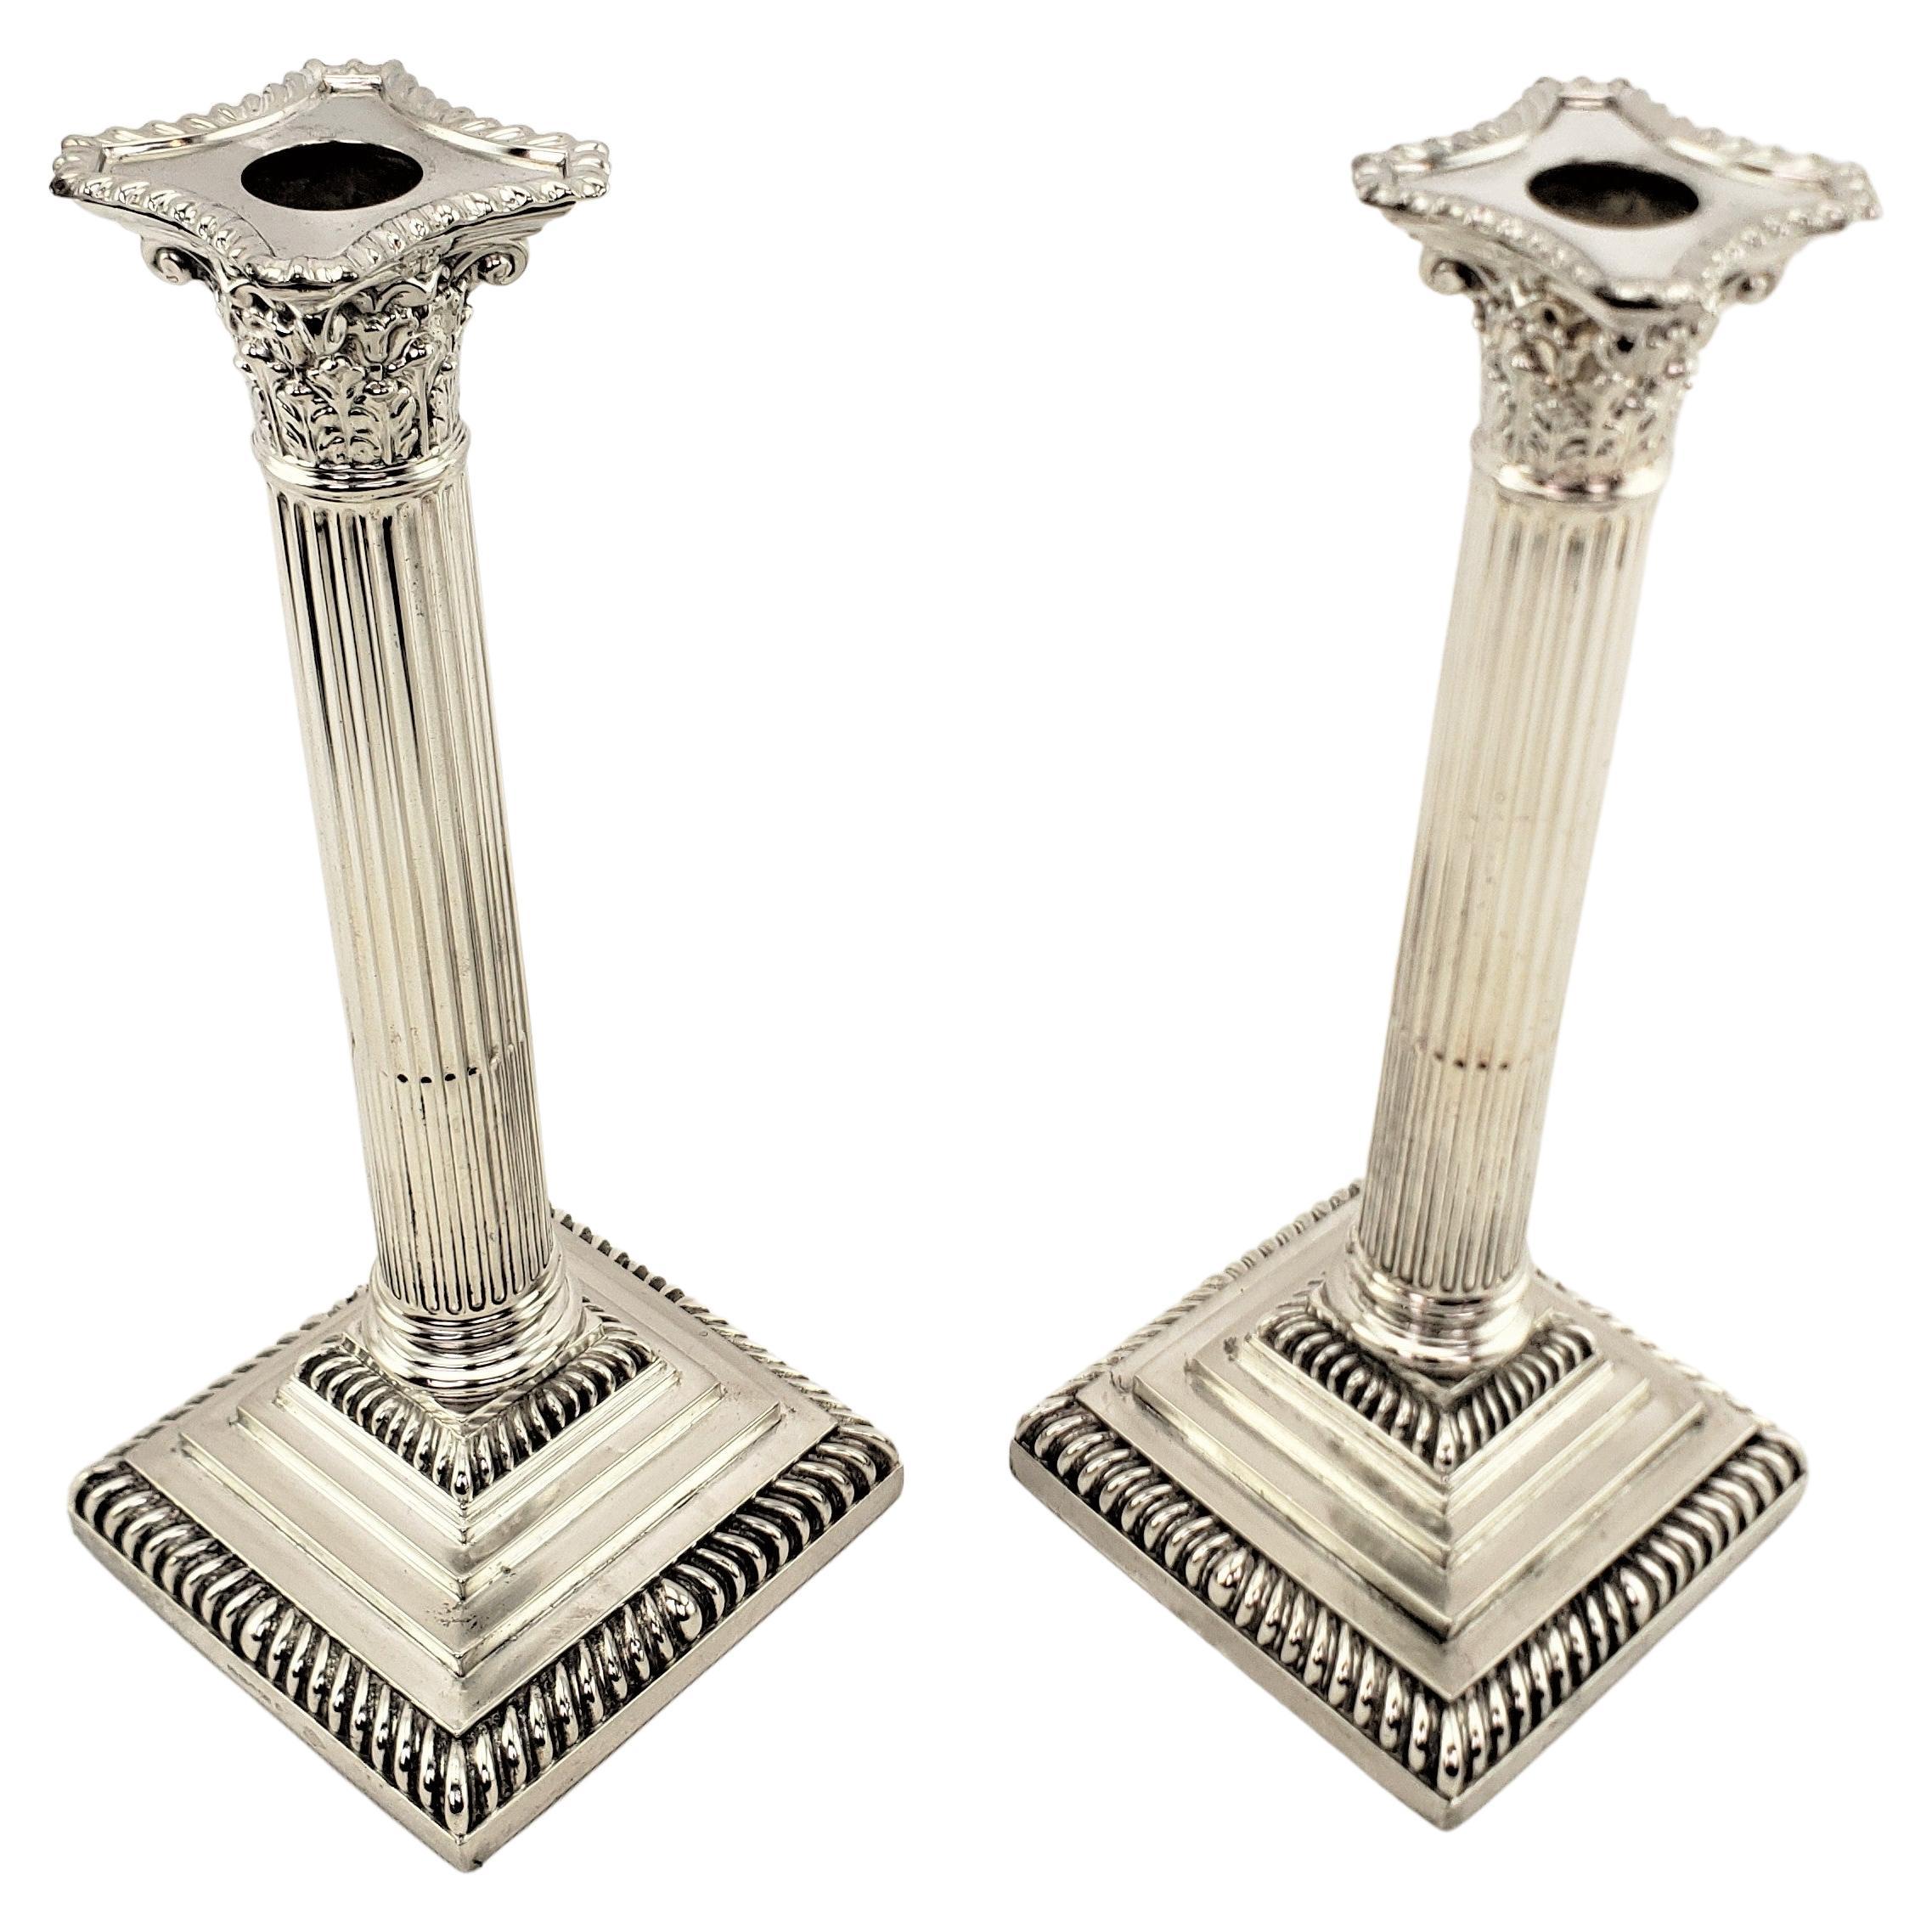 Paire de chandeliers anglais anciens en métal argenté de style colonne corinthienne